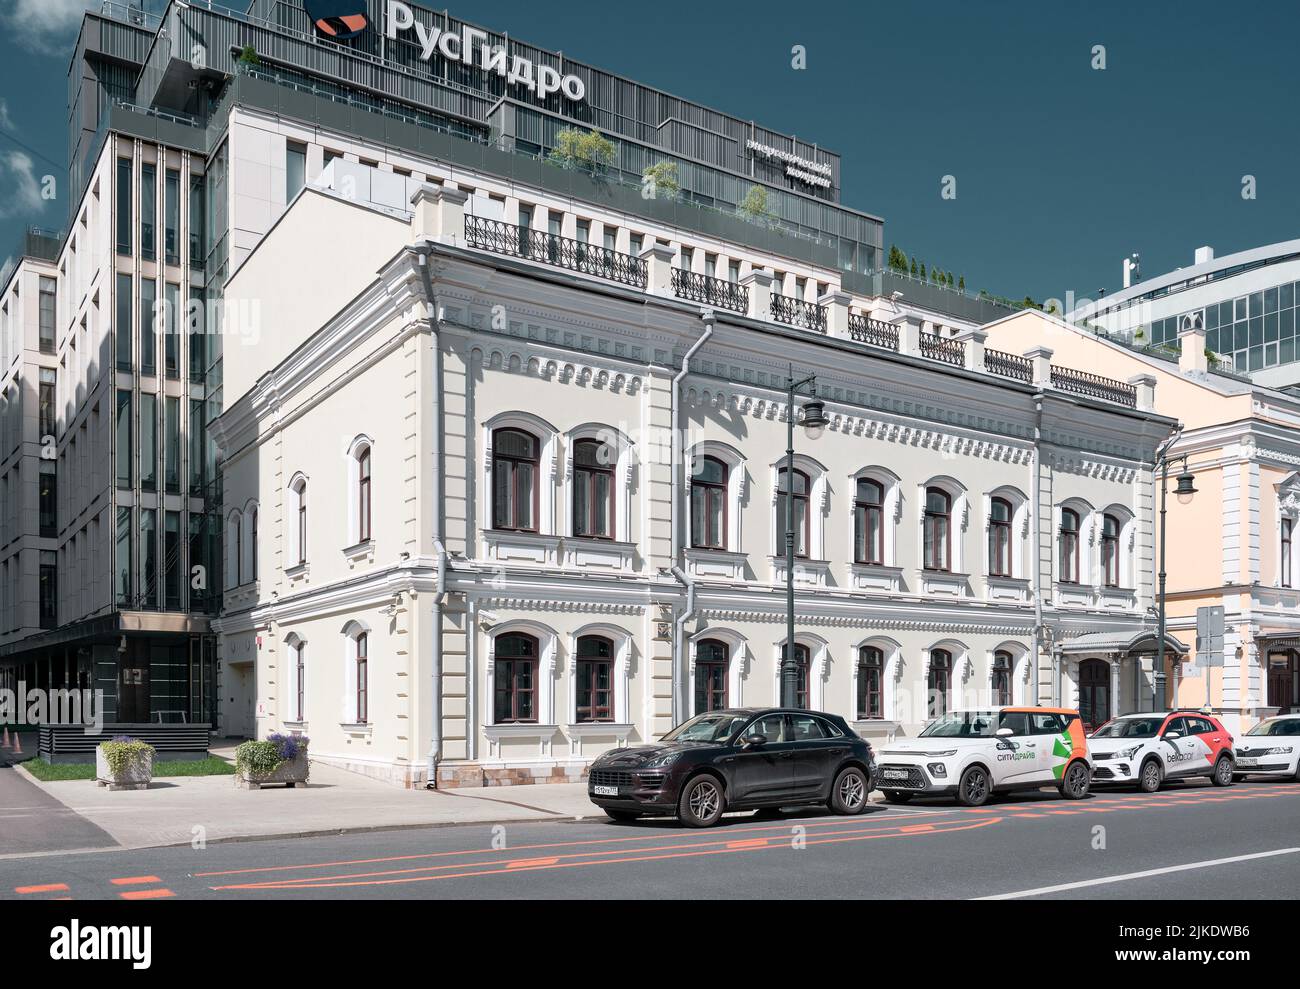 Vista de una antigua mansión, antigua casa rentable construida en 1864, Malaya Dmitrovka Street, punto de referencia: Moscú, Rusia - 22 de julio de 2022 Foto de stock